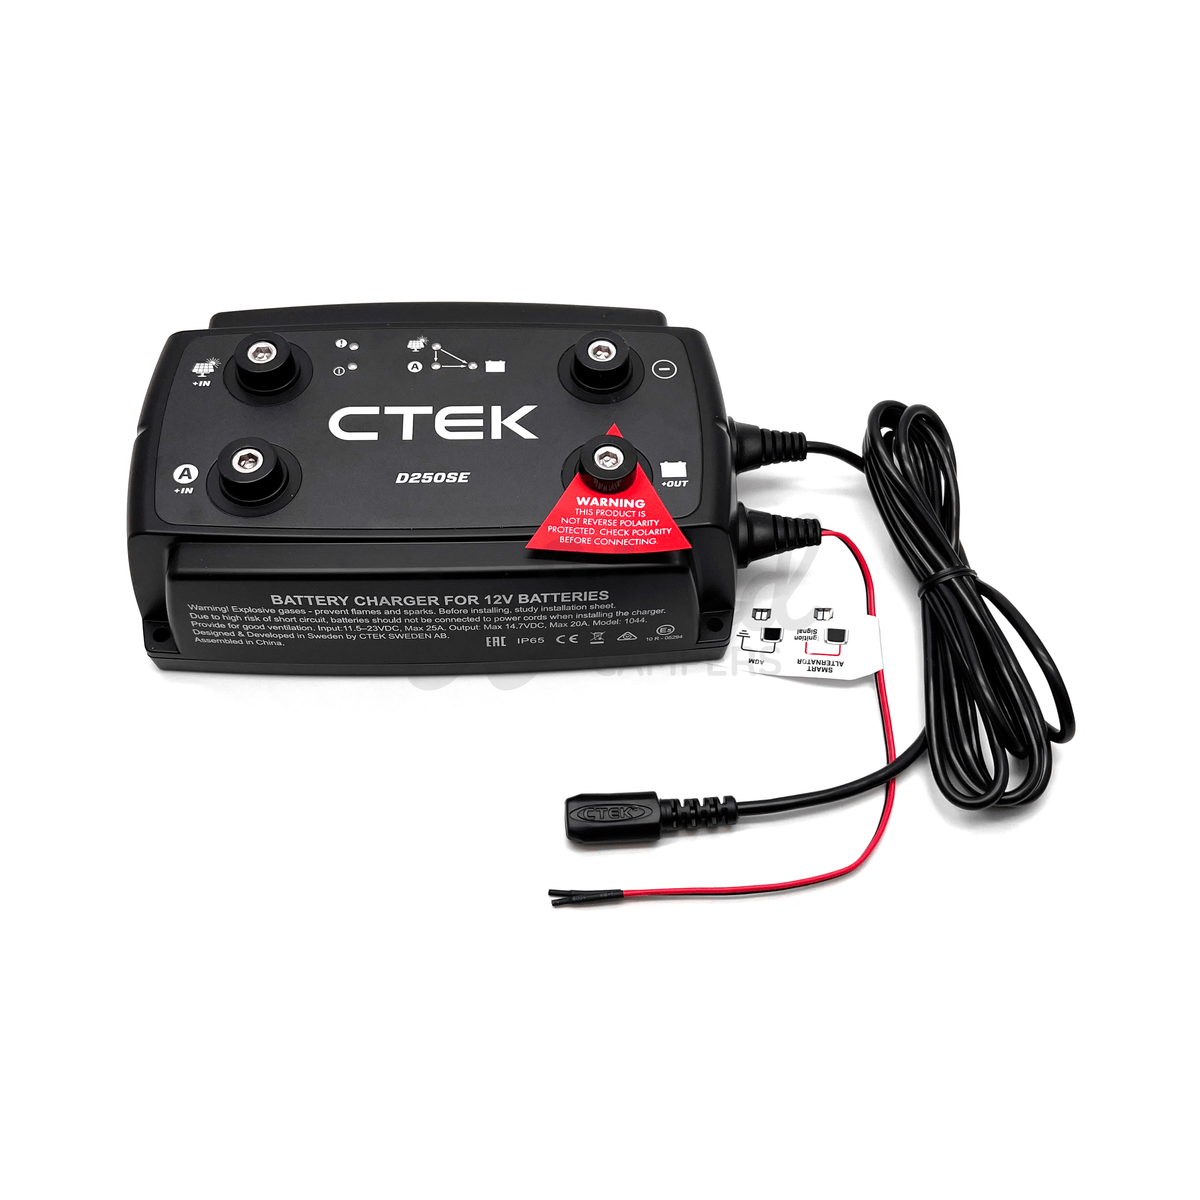 CTEK D250SE 20A/12V Chargeur automatique avec régulateur de charge sol